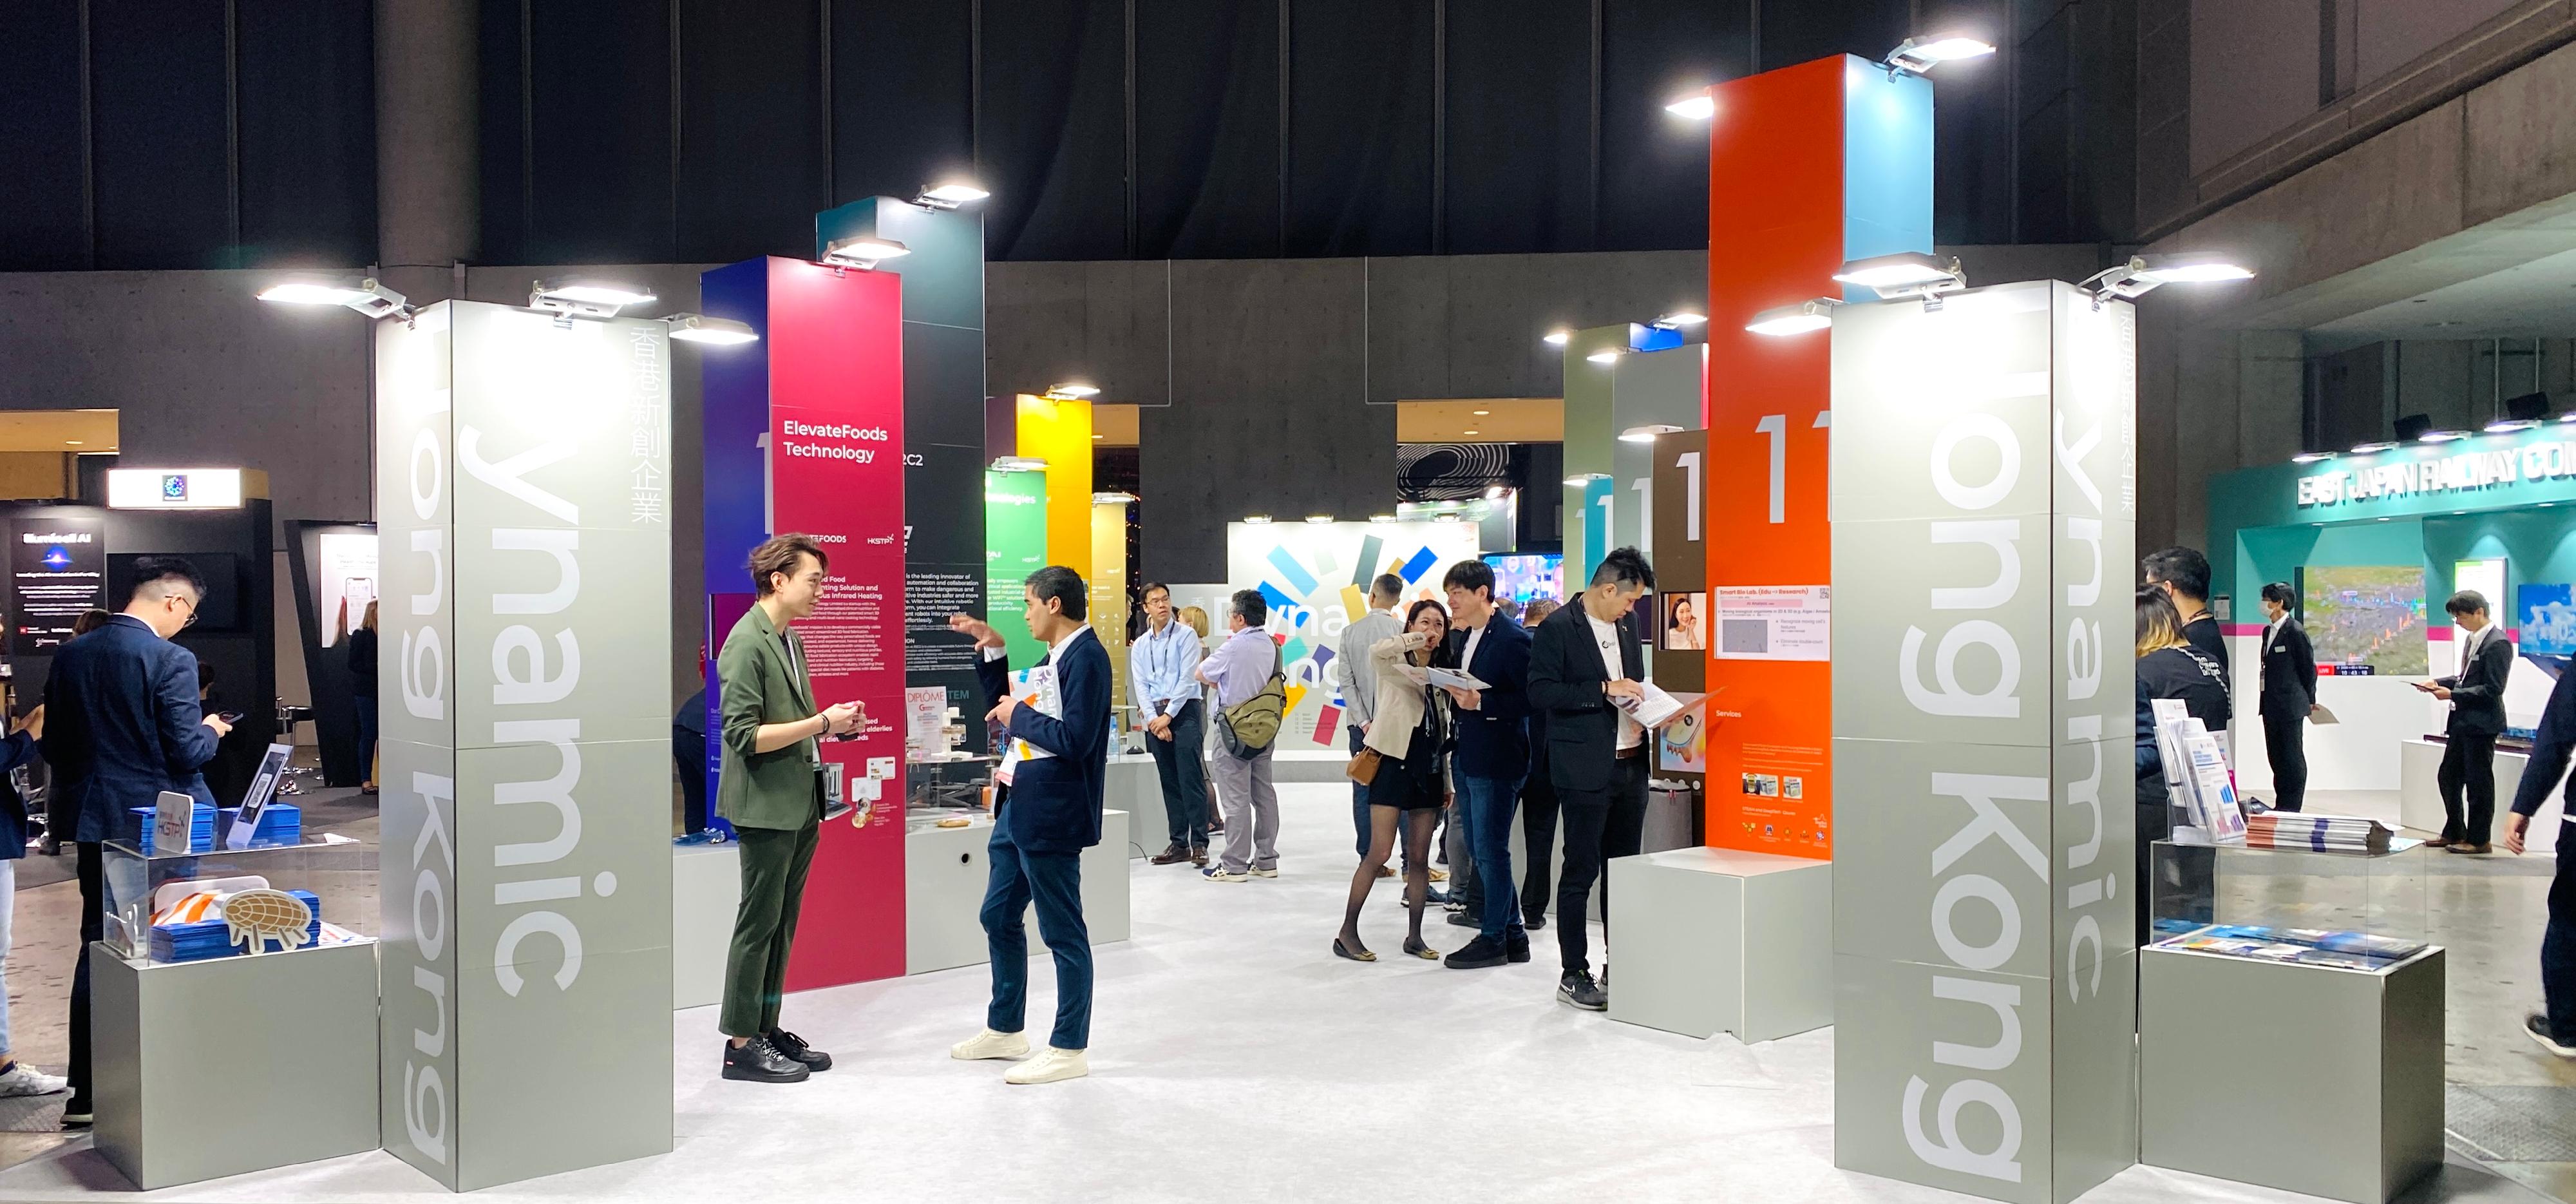 在SusHi Tech Tokyo 2024Global Startup Program设立的「香港展区」今日（五月十五日）在日本东京揭幕。「香港展区」以「Dynamic Hong Kong」为主题，汇聚了20家香港的初创企业，让它们展示其业务内容、服务和产品，以及在环球市场寻找商业和合作机会。